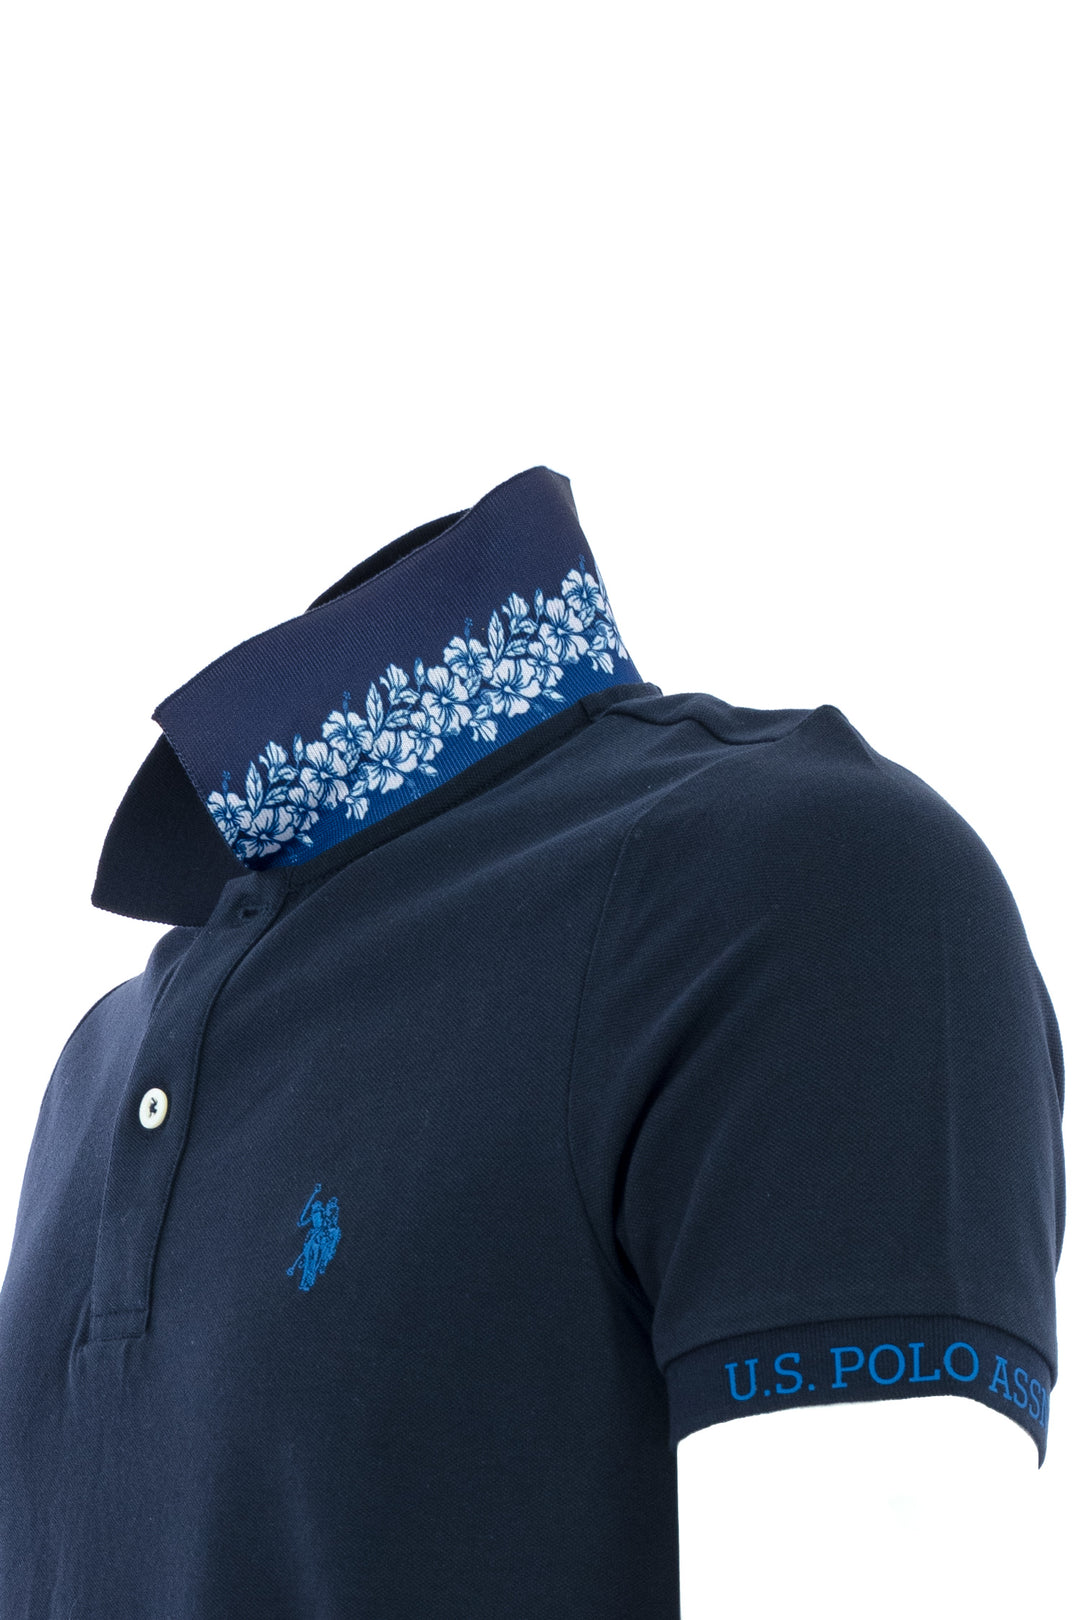 U.S. POLO ASSN. Polo in tricot con colletto fantasia e logo sulla manica blu navy - Mancinelli 1954